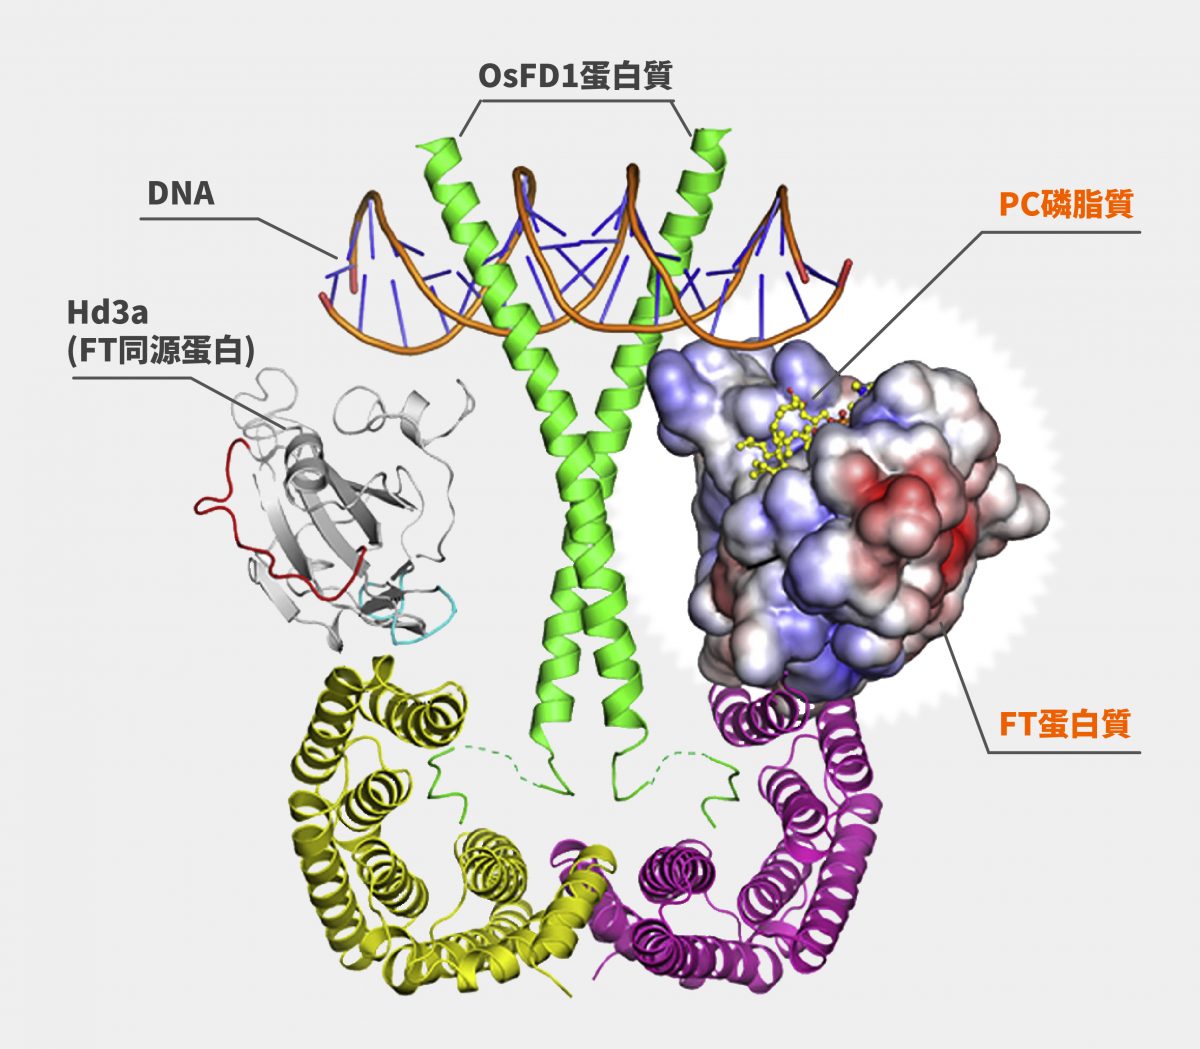 電腦模擬 FT 蛋白質和 PC 磷脂質結合的「開花素活化複合體」3D 結構。 資料來源│iScience 